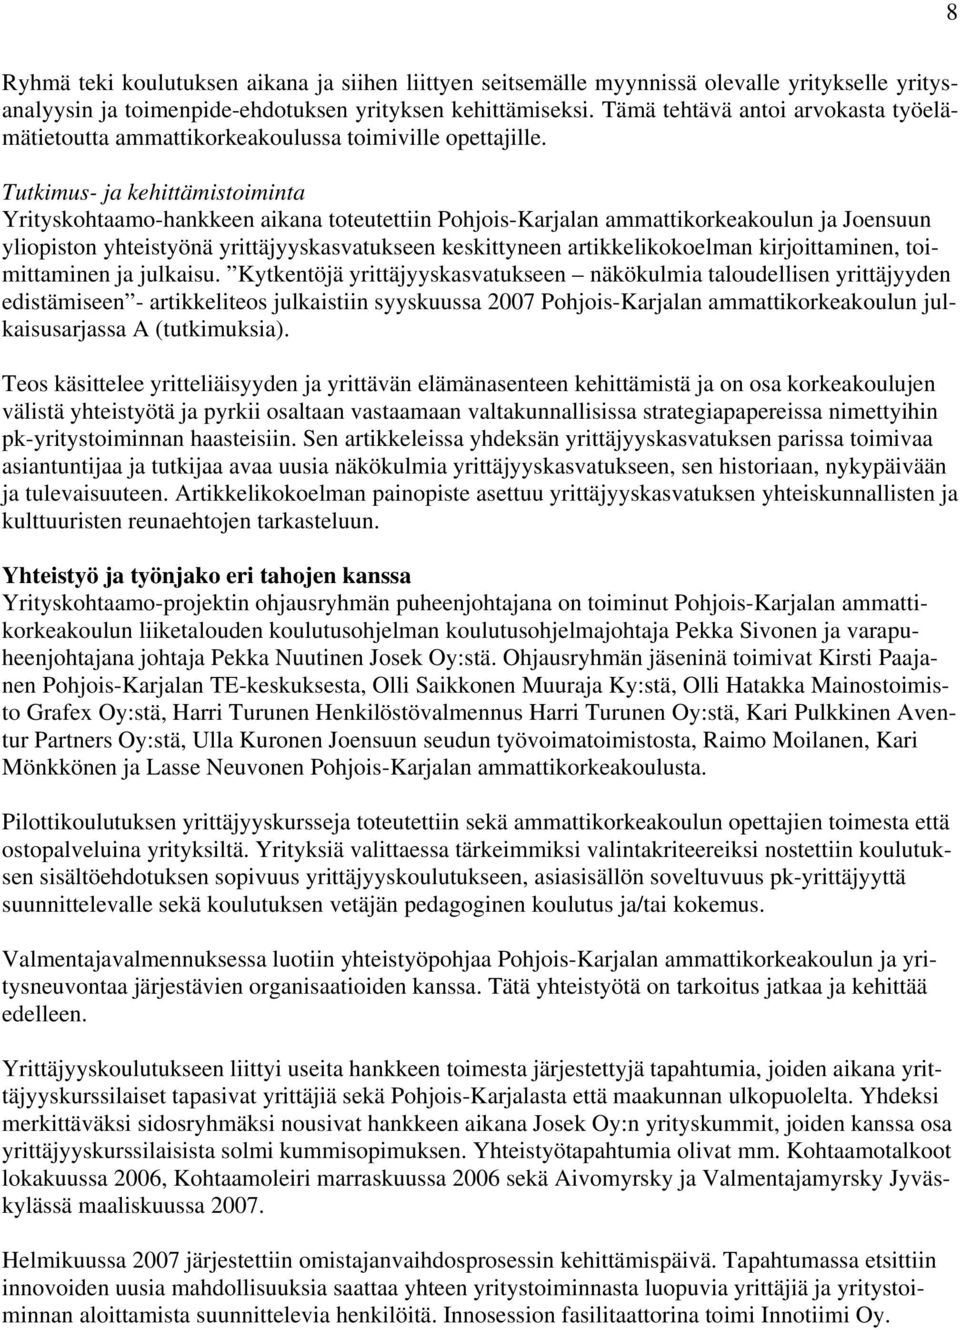 Tutkimus- ja kehittämistoiminta Yrityskohtaamo-hankkeen aikana toteutettiin Pohjois-Karjalan ammattikorkeakoulun ja Joensuun yliopiston yhteistyönä yrittäjyyskasvatukseen keskittyneen